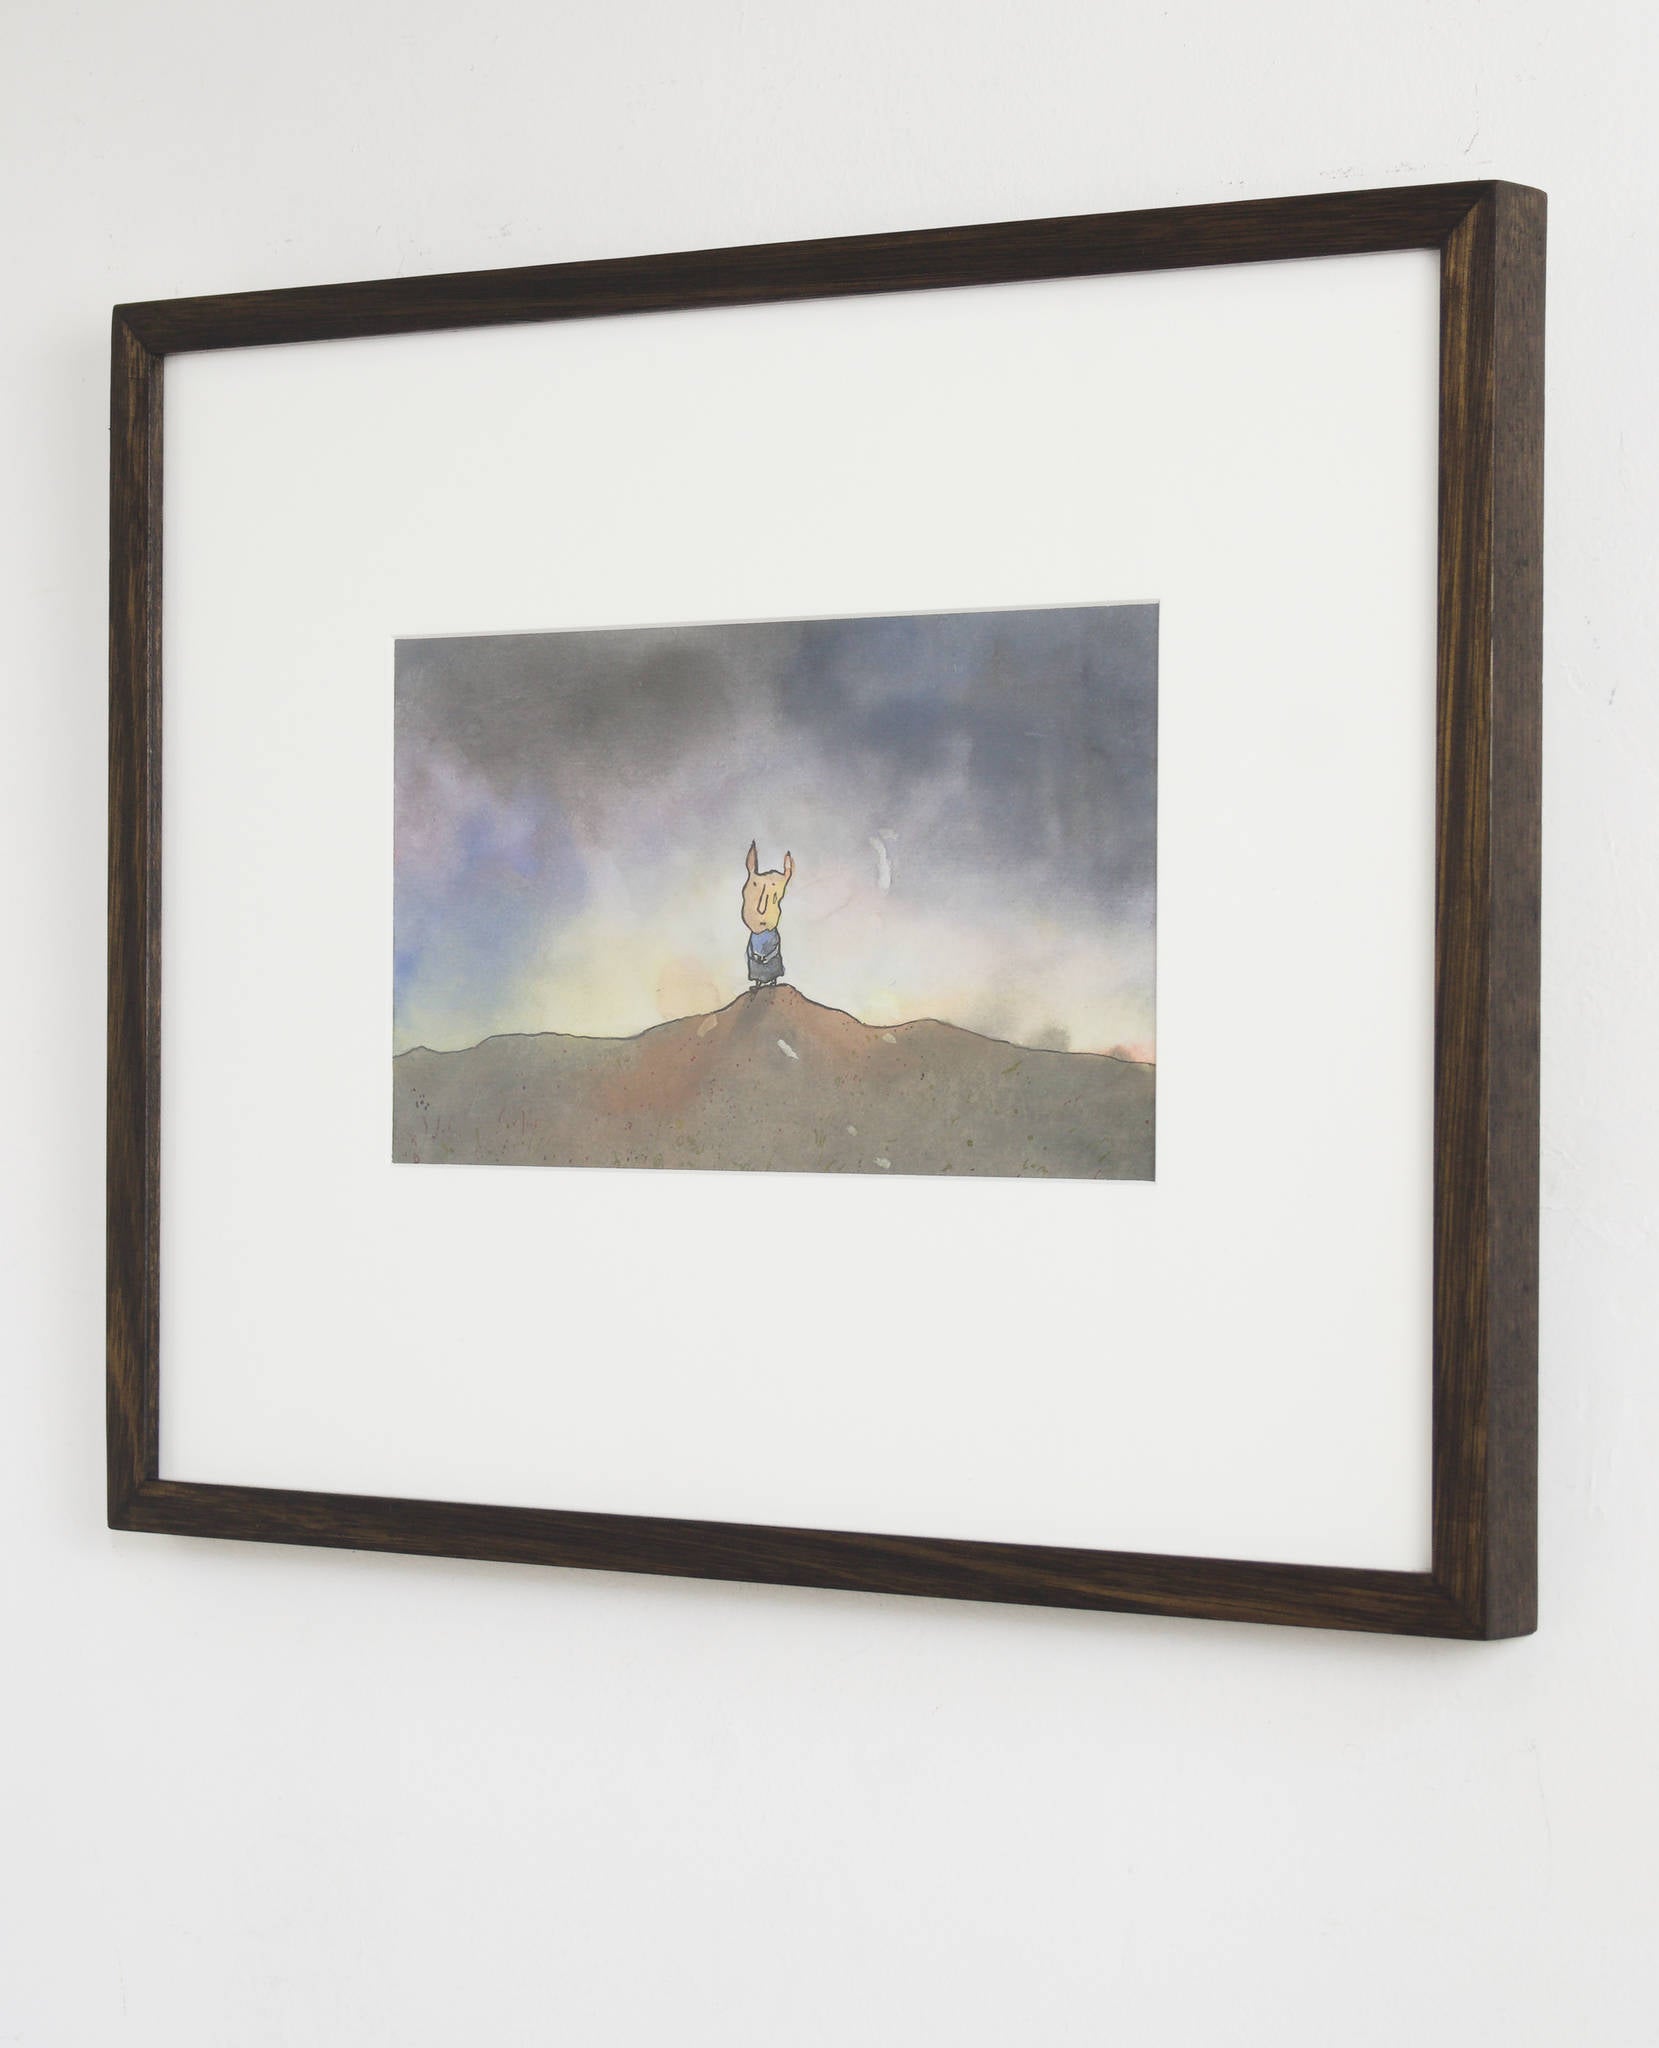 Michael Leunig 'Untitled (Piglet on dirt mound)'